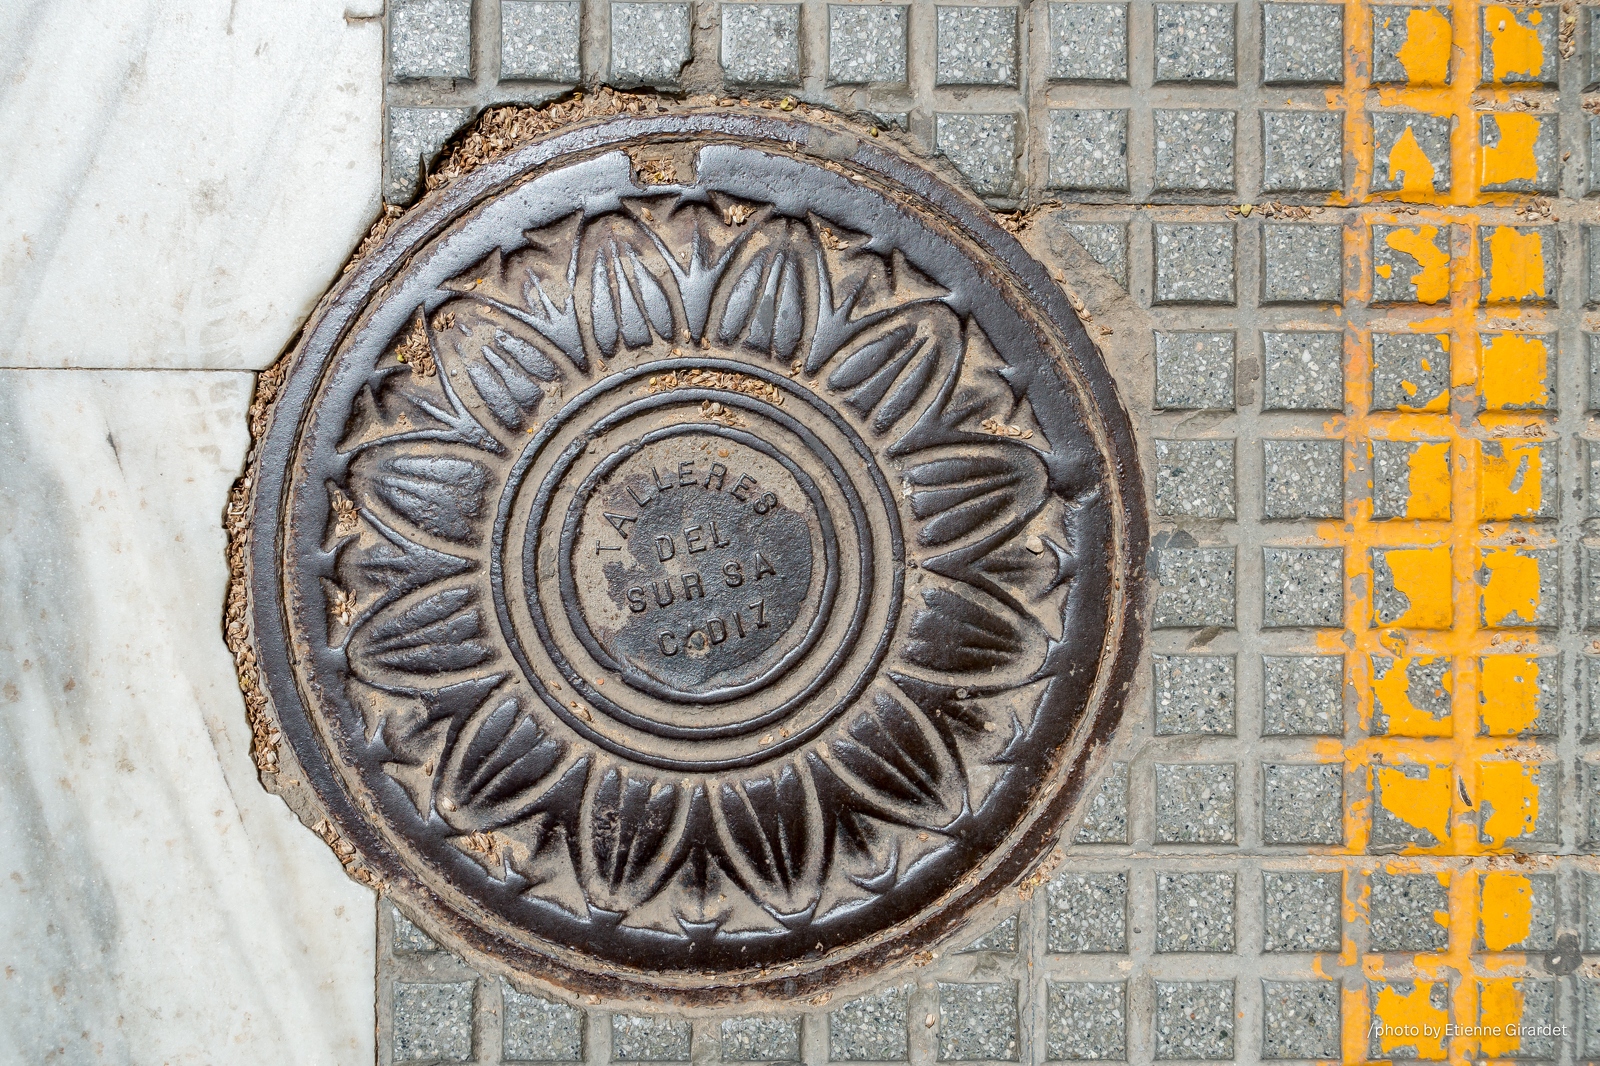 201704_19_DSC00610-manhole-cover--by-E-Girardet.jpg